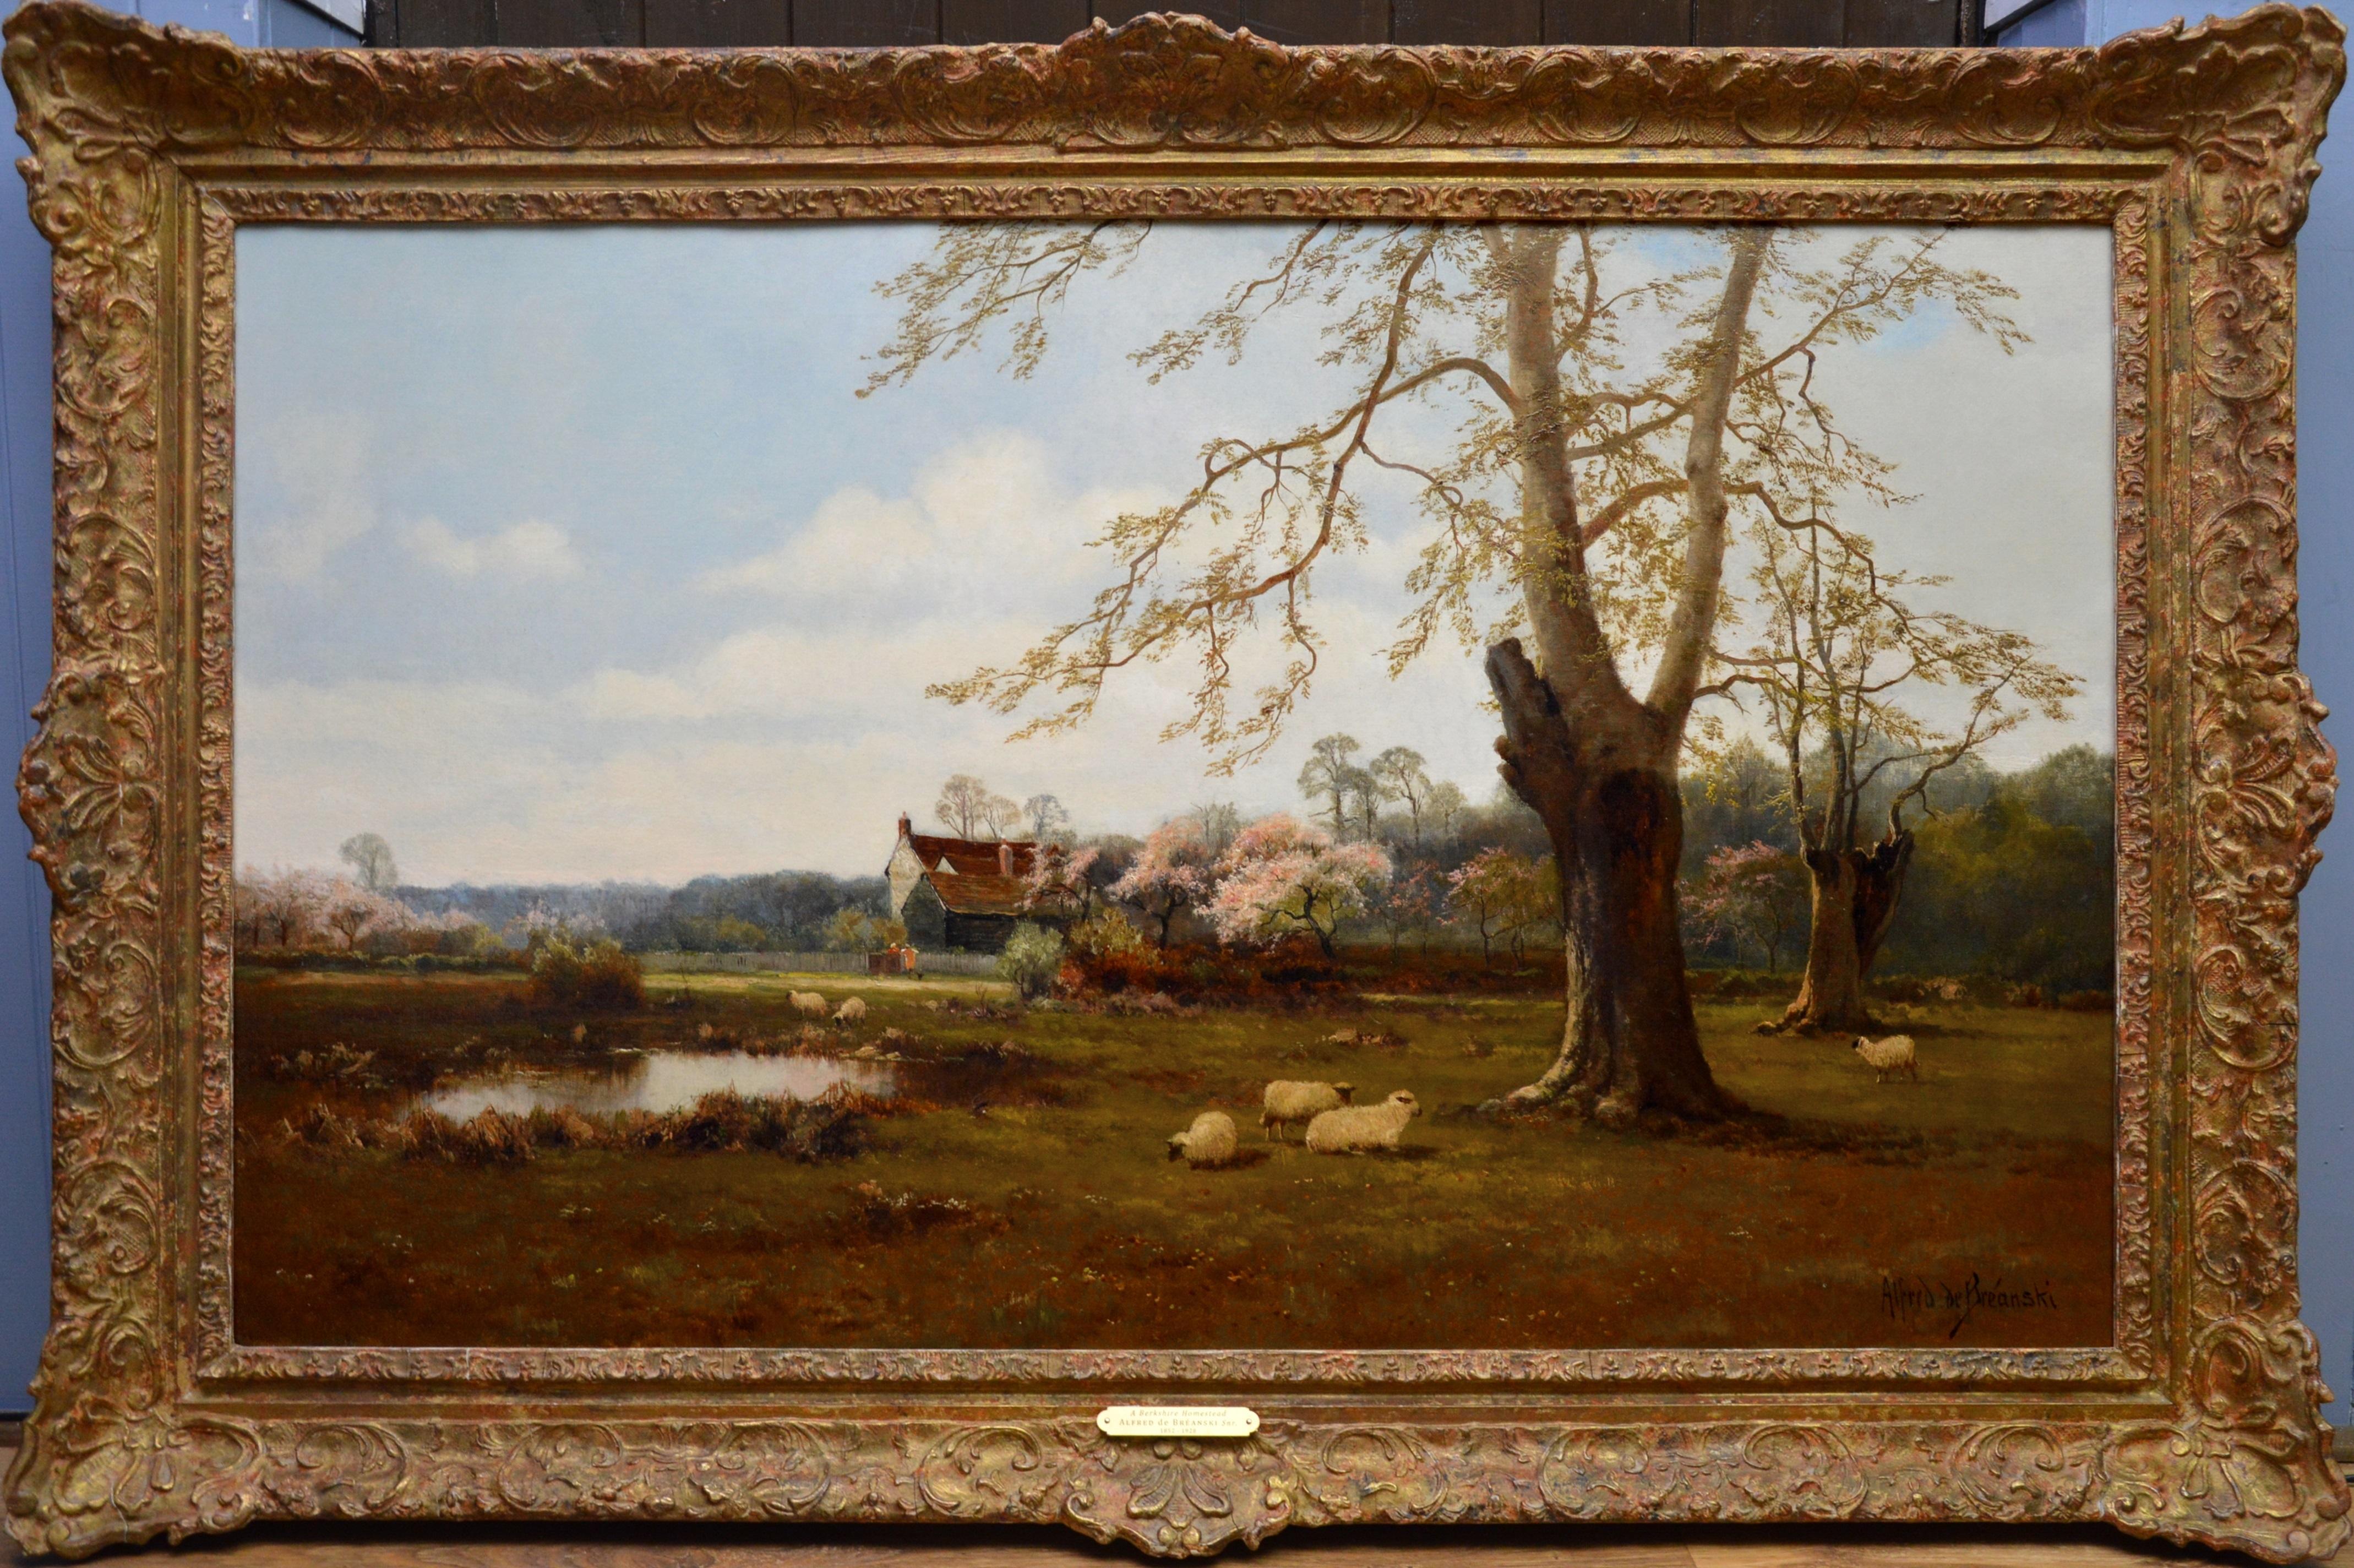 Alfred de Breanski Sr. Animal Painting - Berkshire Homestead - 19th Century English Landscape Oil Painting - de Breanski